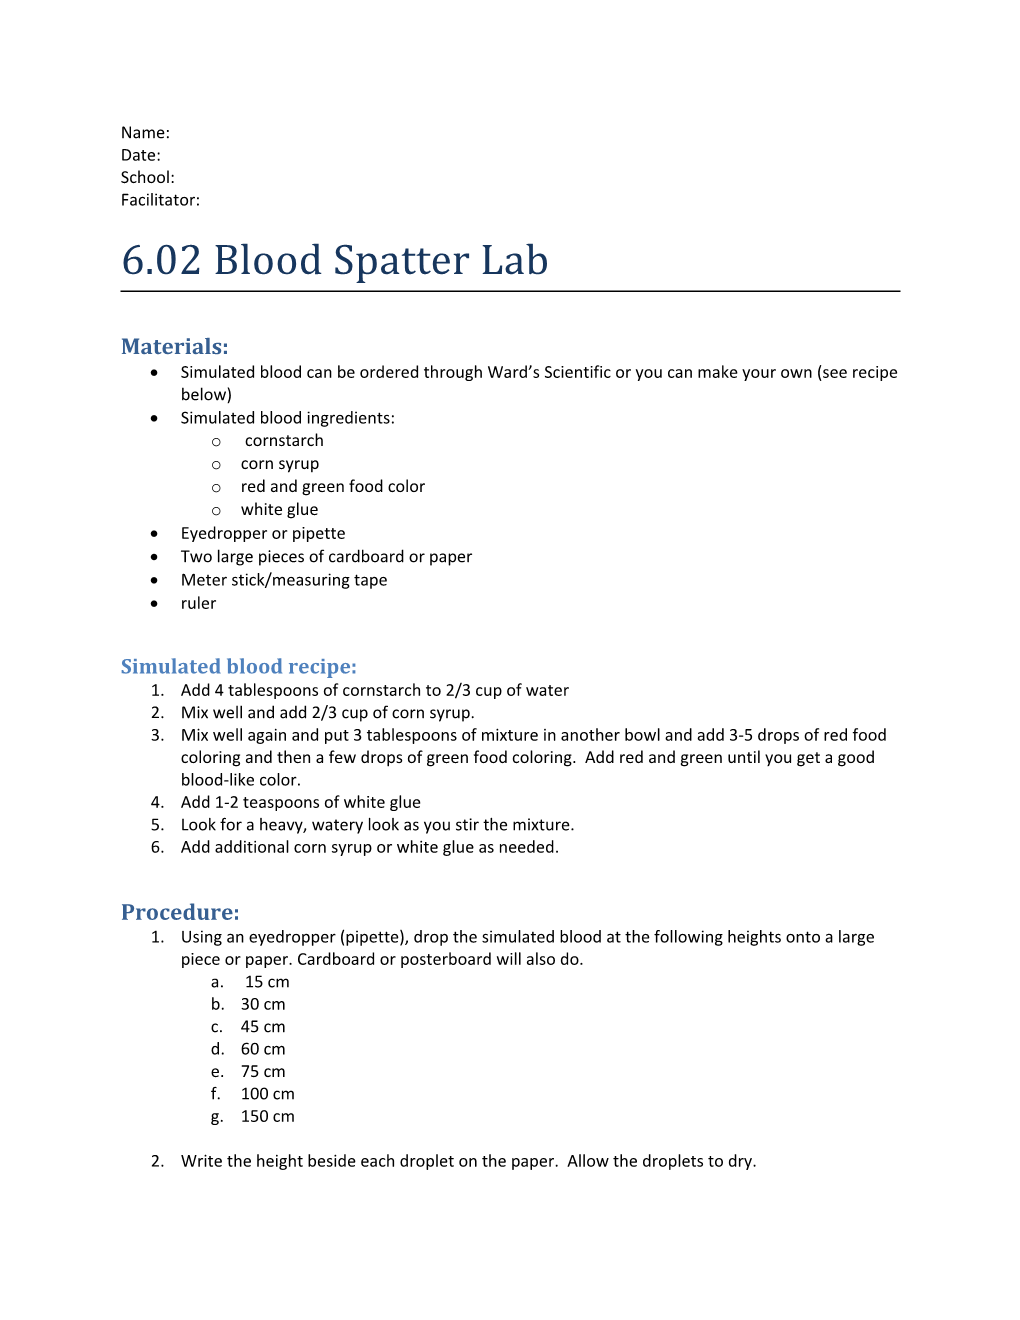 6.02 Blood Spatter Lab